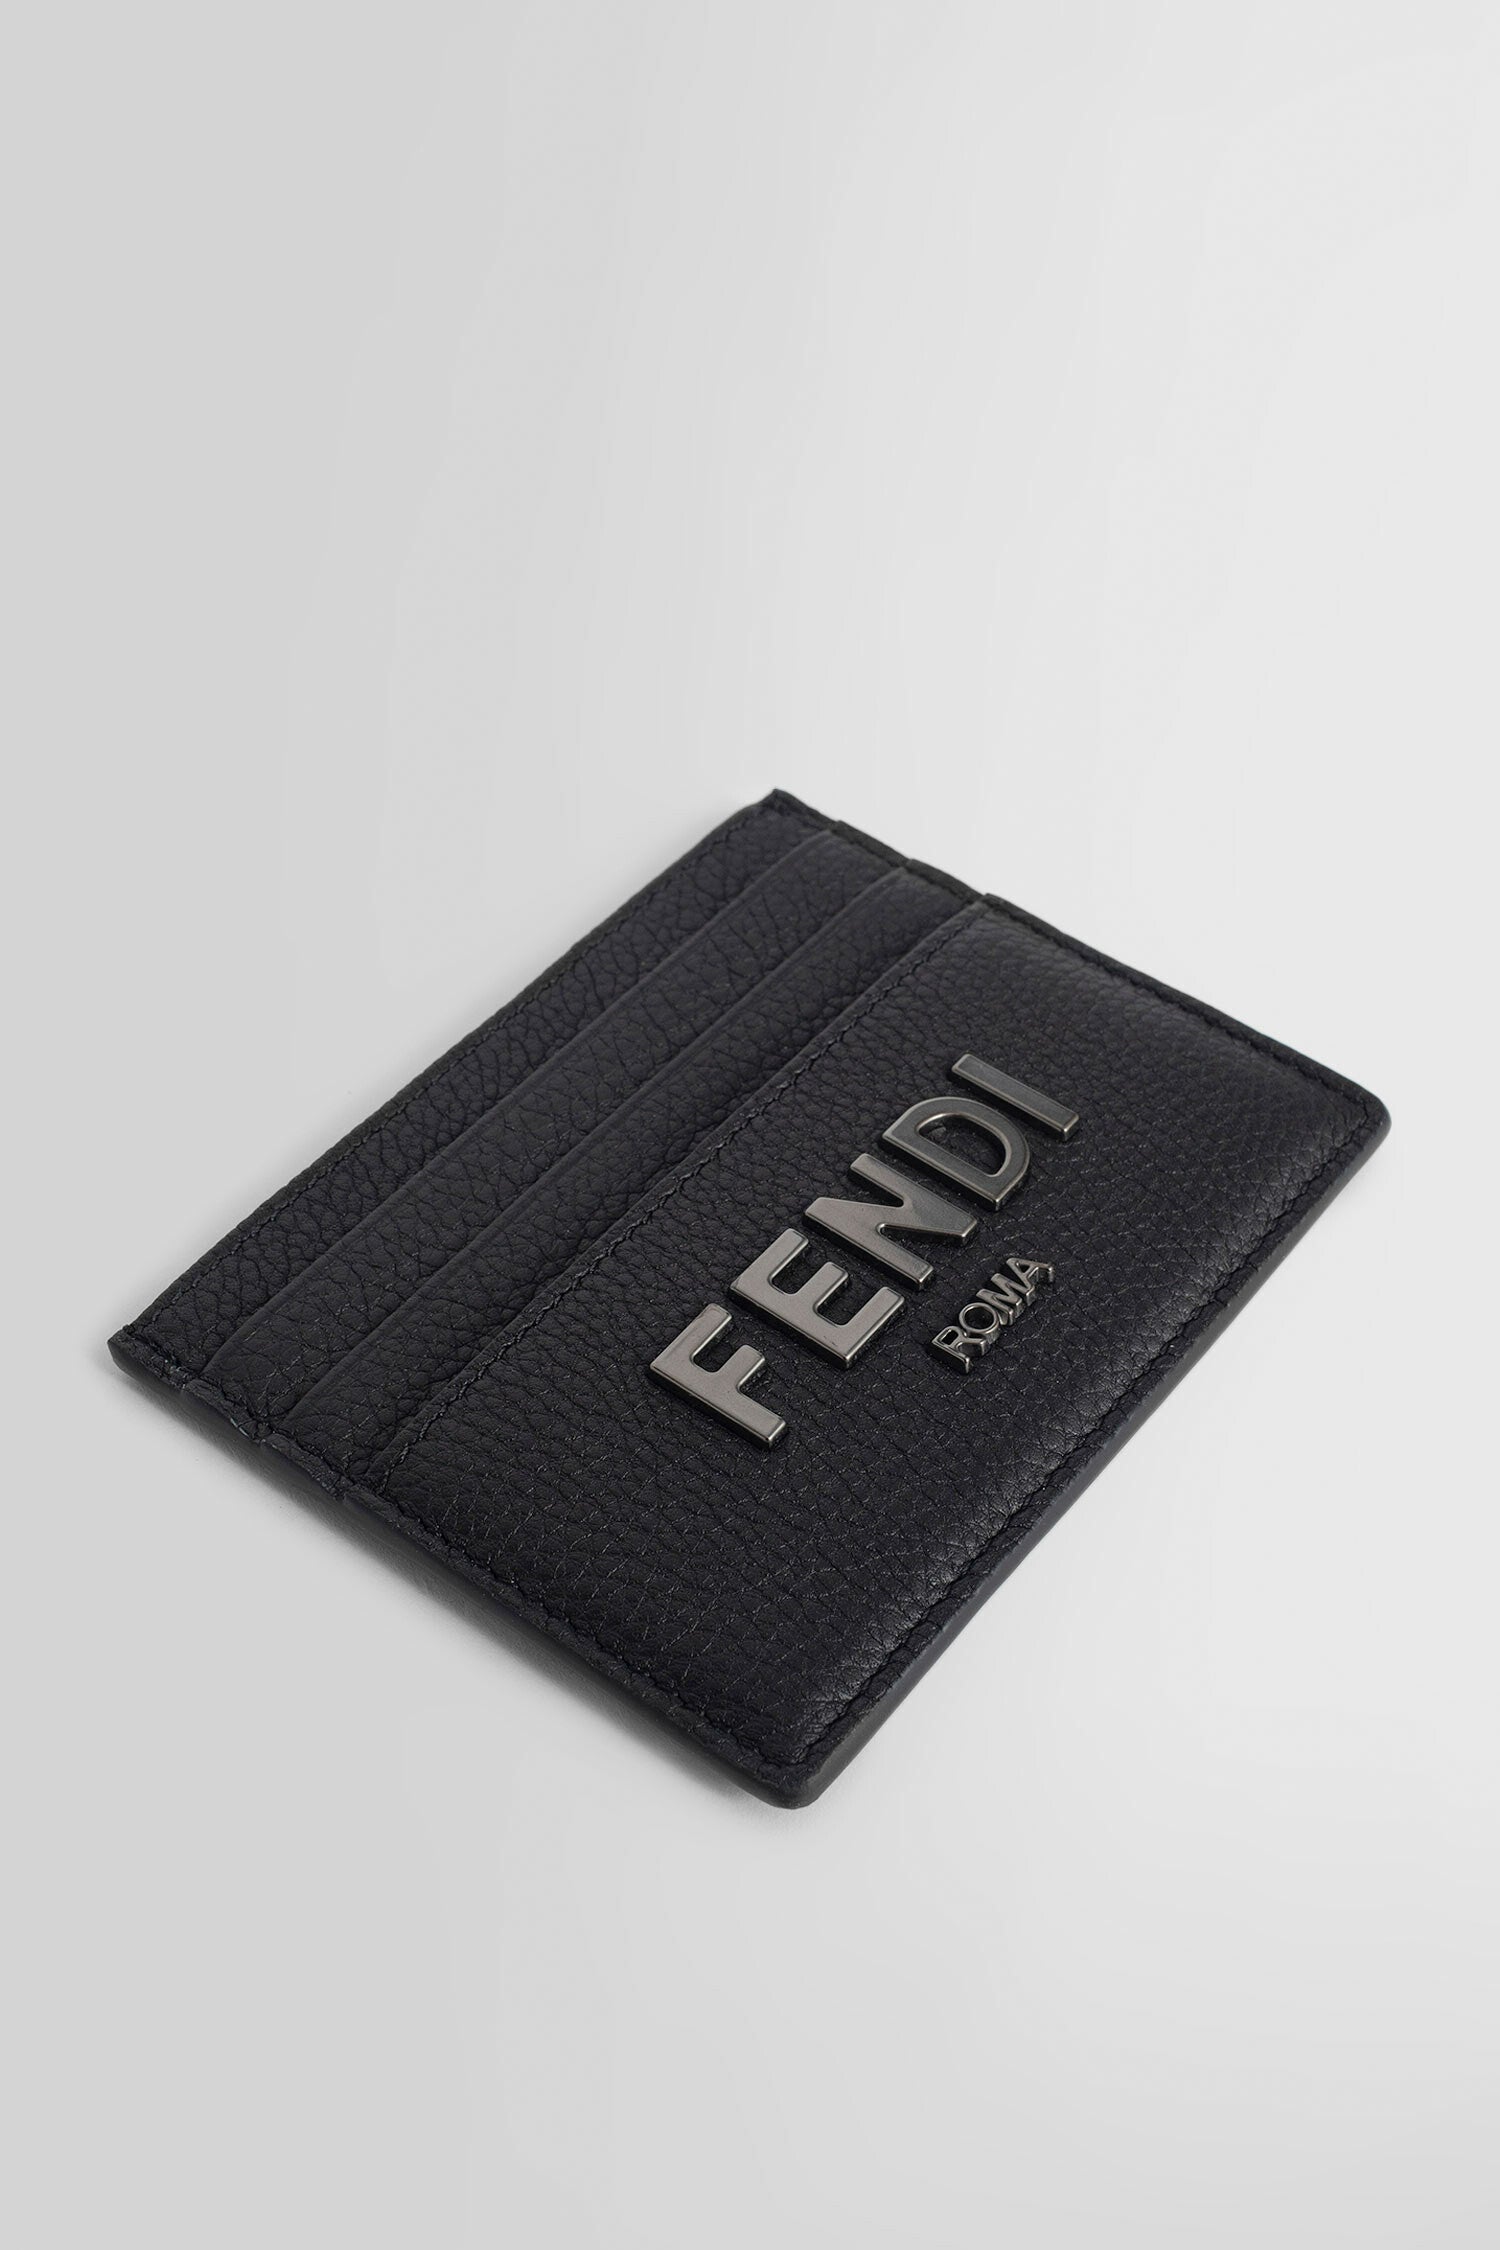 FENDI  カードホルダー